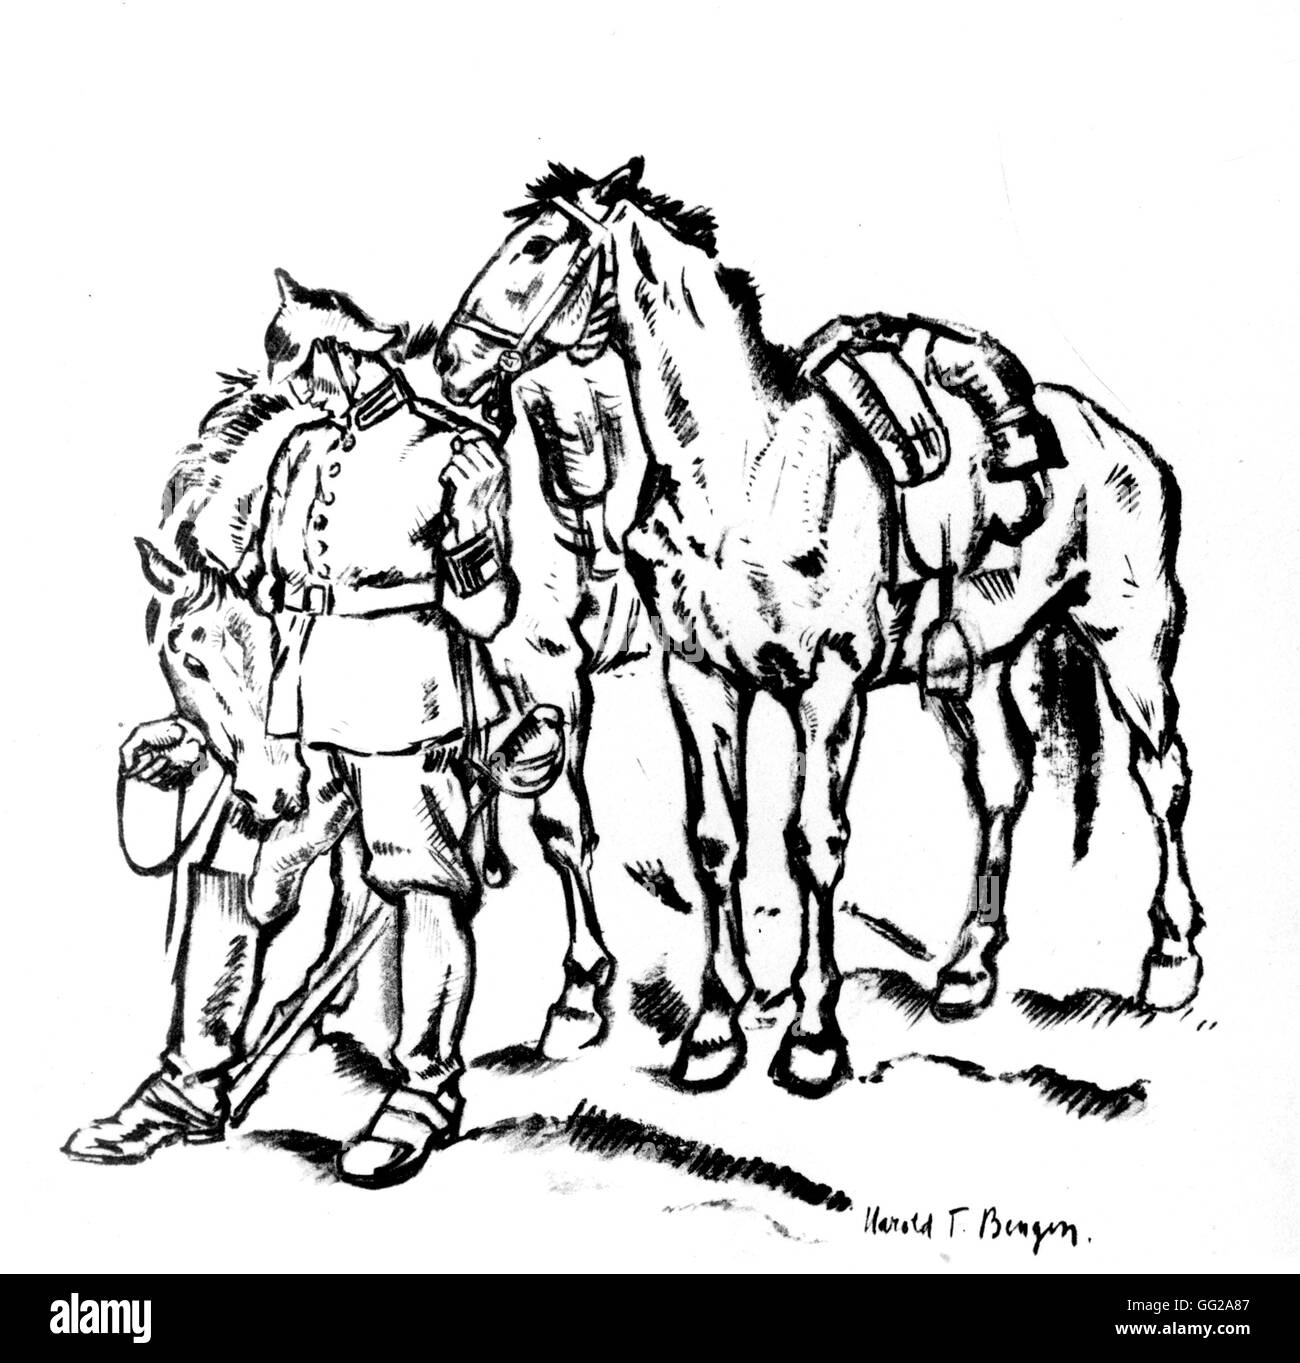 Dibujo por Harold T. Bengen en 'Wreland' Jinete 1915-1916 Alemania - La I Guerra Mundial B.D.I.C. Foto de stock